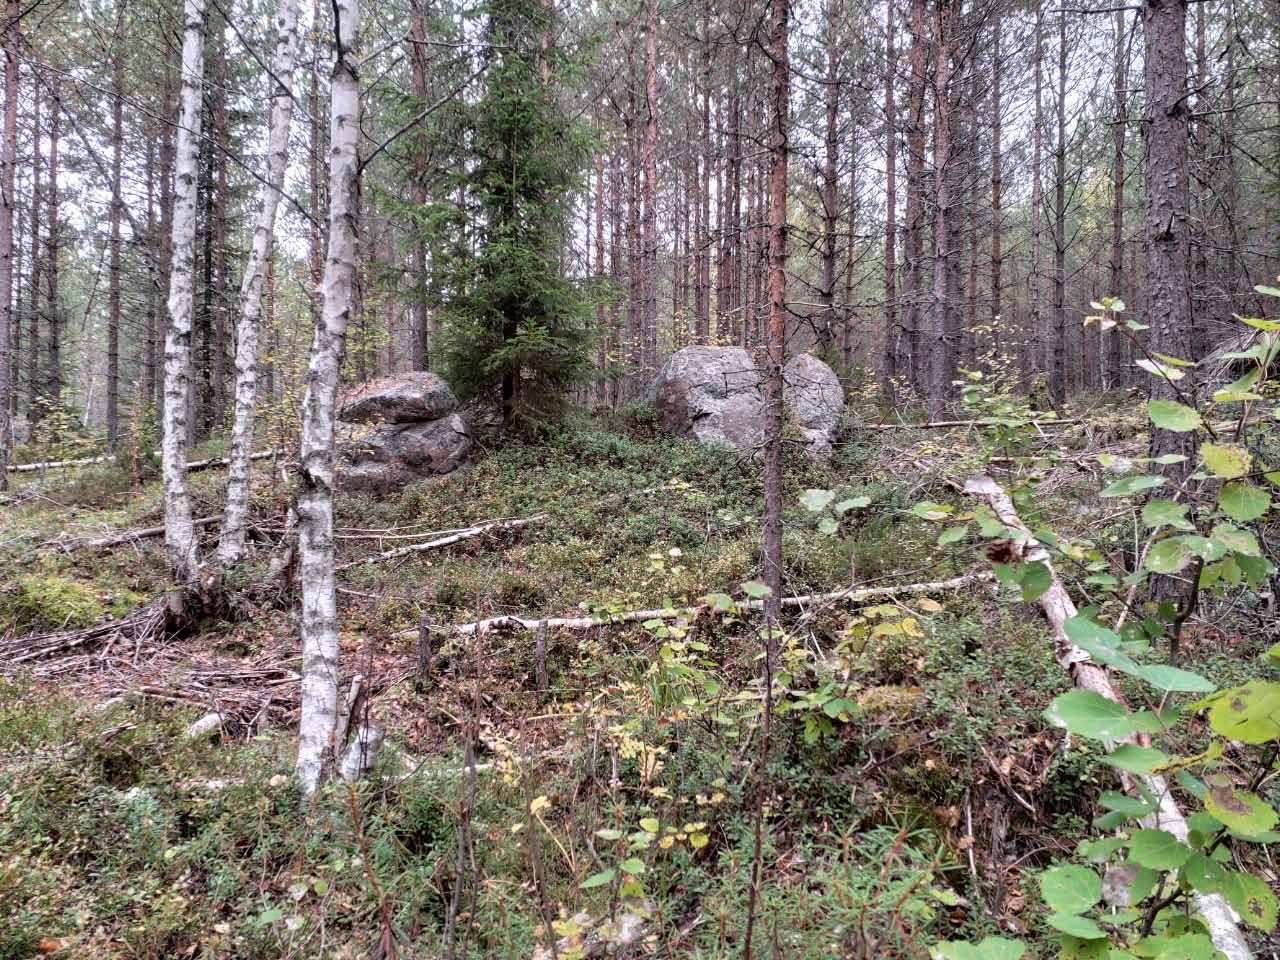 Kuva: Isoja kiviä ”maamerkkeinä” reitin pohjoispään rinteessä. Porvoon museo – Itä-Uudenmaan alueellinen vastuumuseo. CC BY 4.0 Riikka Mustonen 27.9.2021